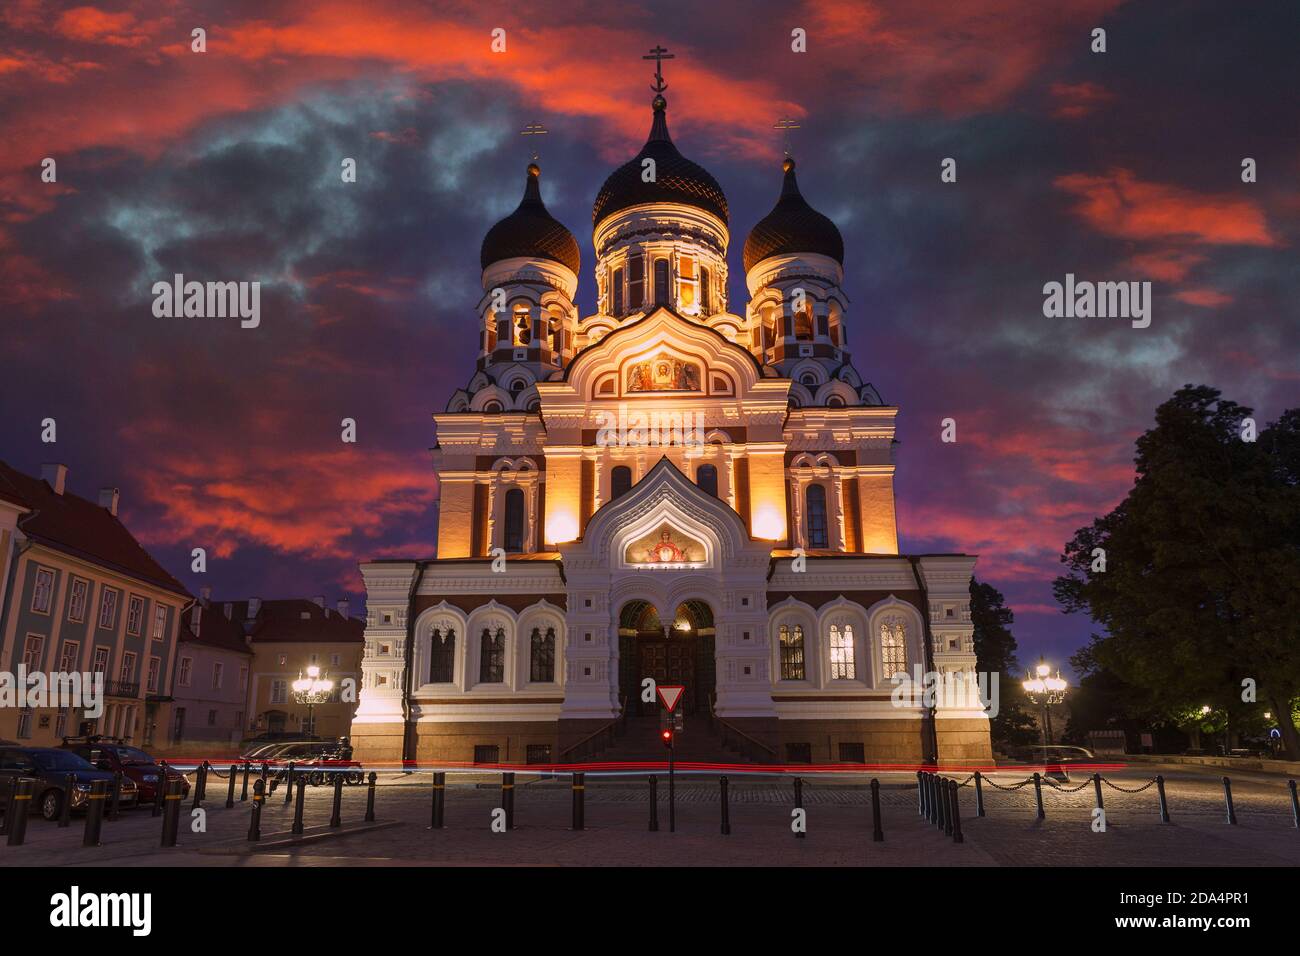 Vue nocturne de la cathédrale Alexandre Nevsky, Tallinn, Estonie. Coucher de soleil spectaculaire Banque D'Images